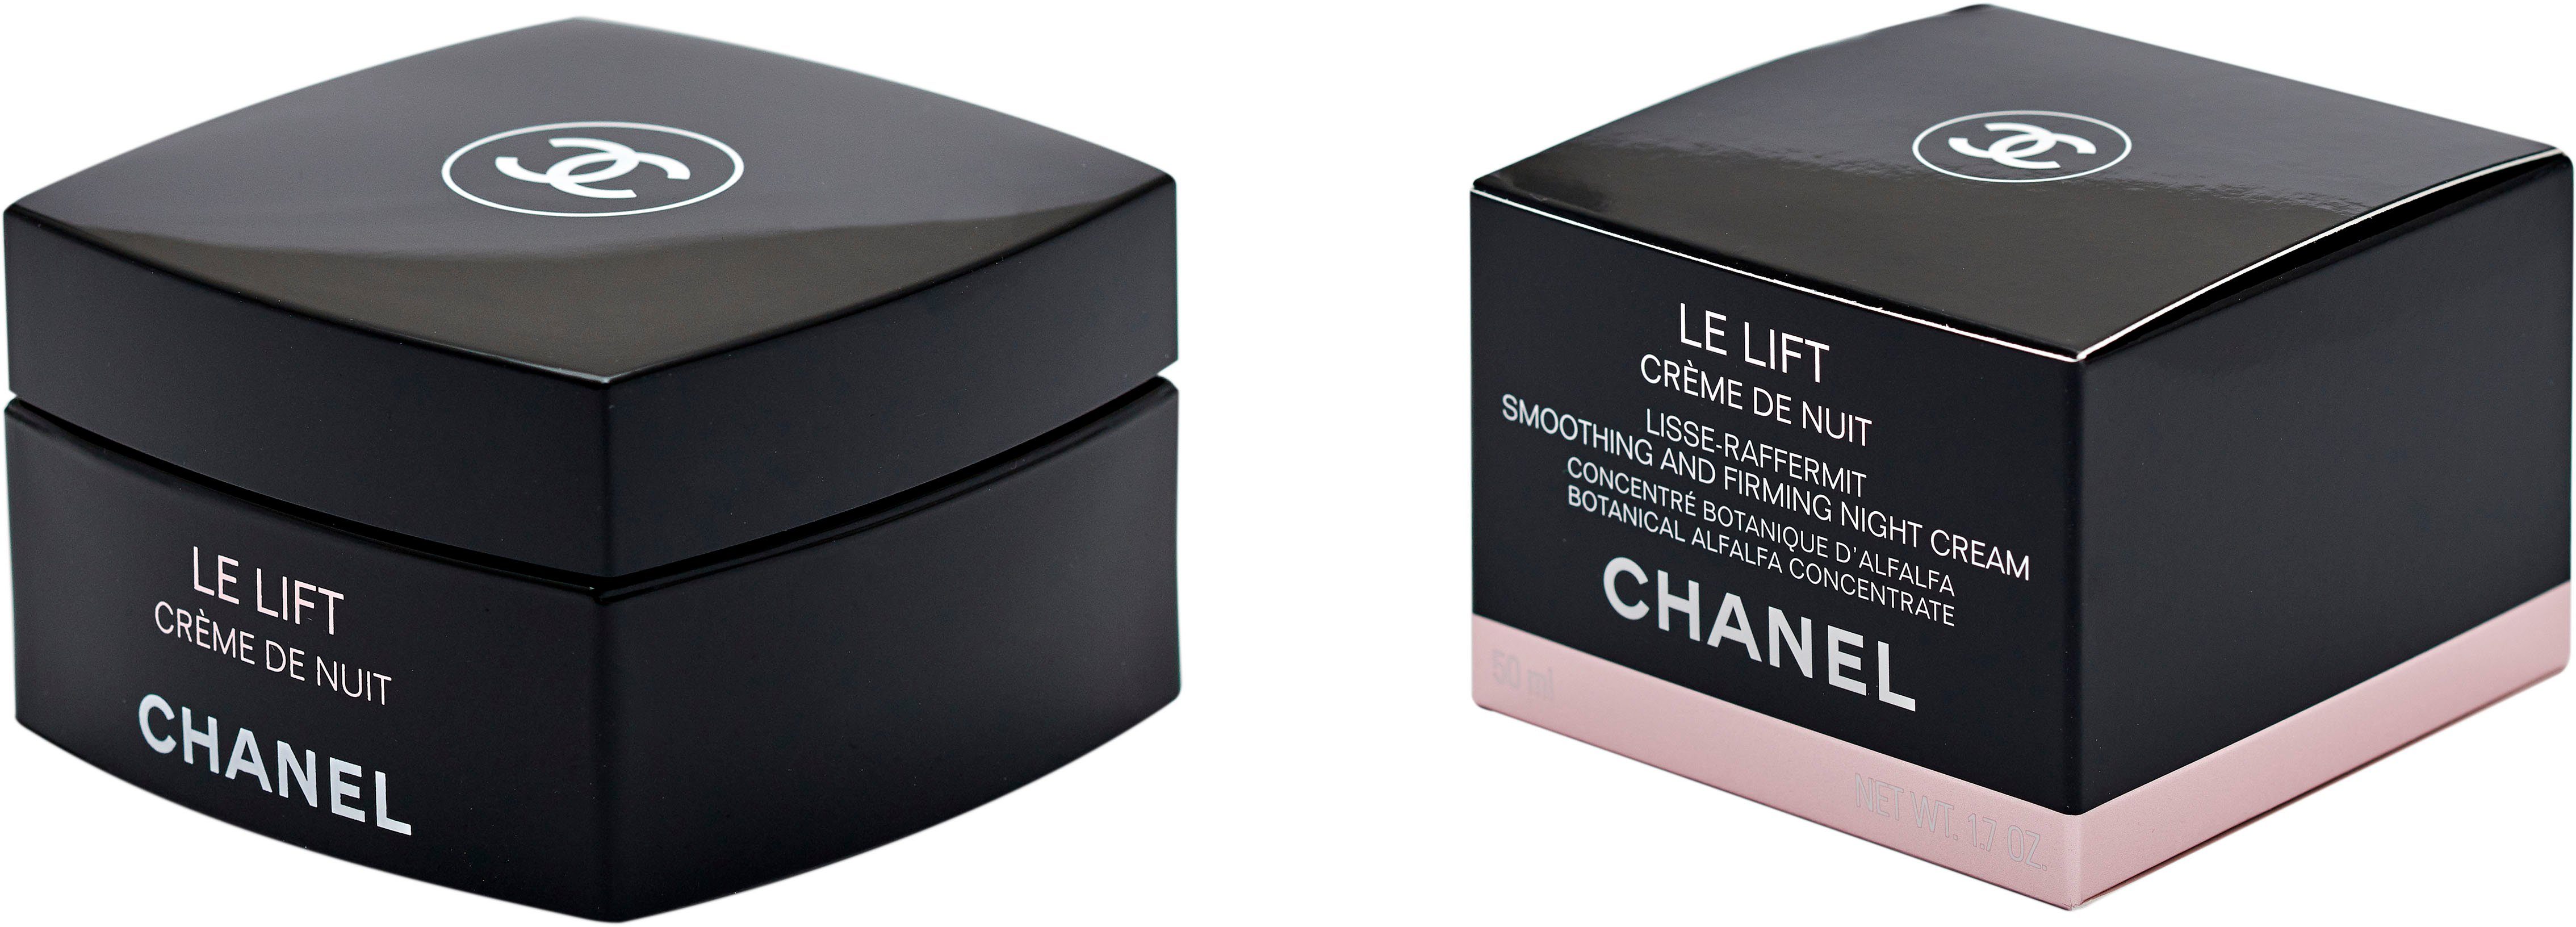 CHANEL Nachtcreme Chanel Lift Creme De Le Nuit